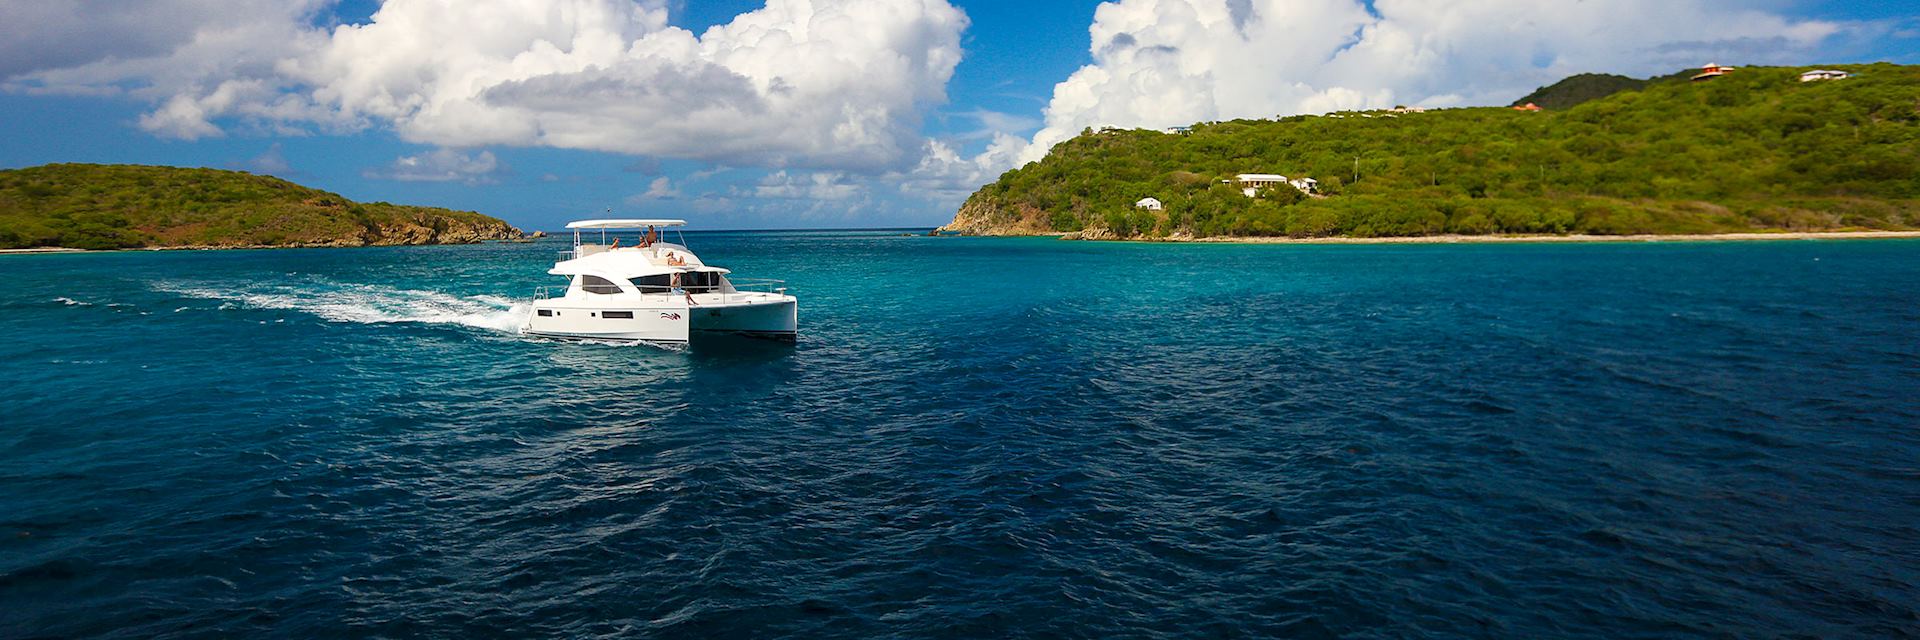 The Moorings 514 Power Catamaran, Grenada